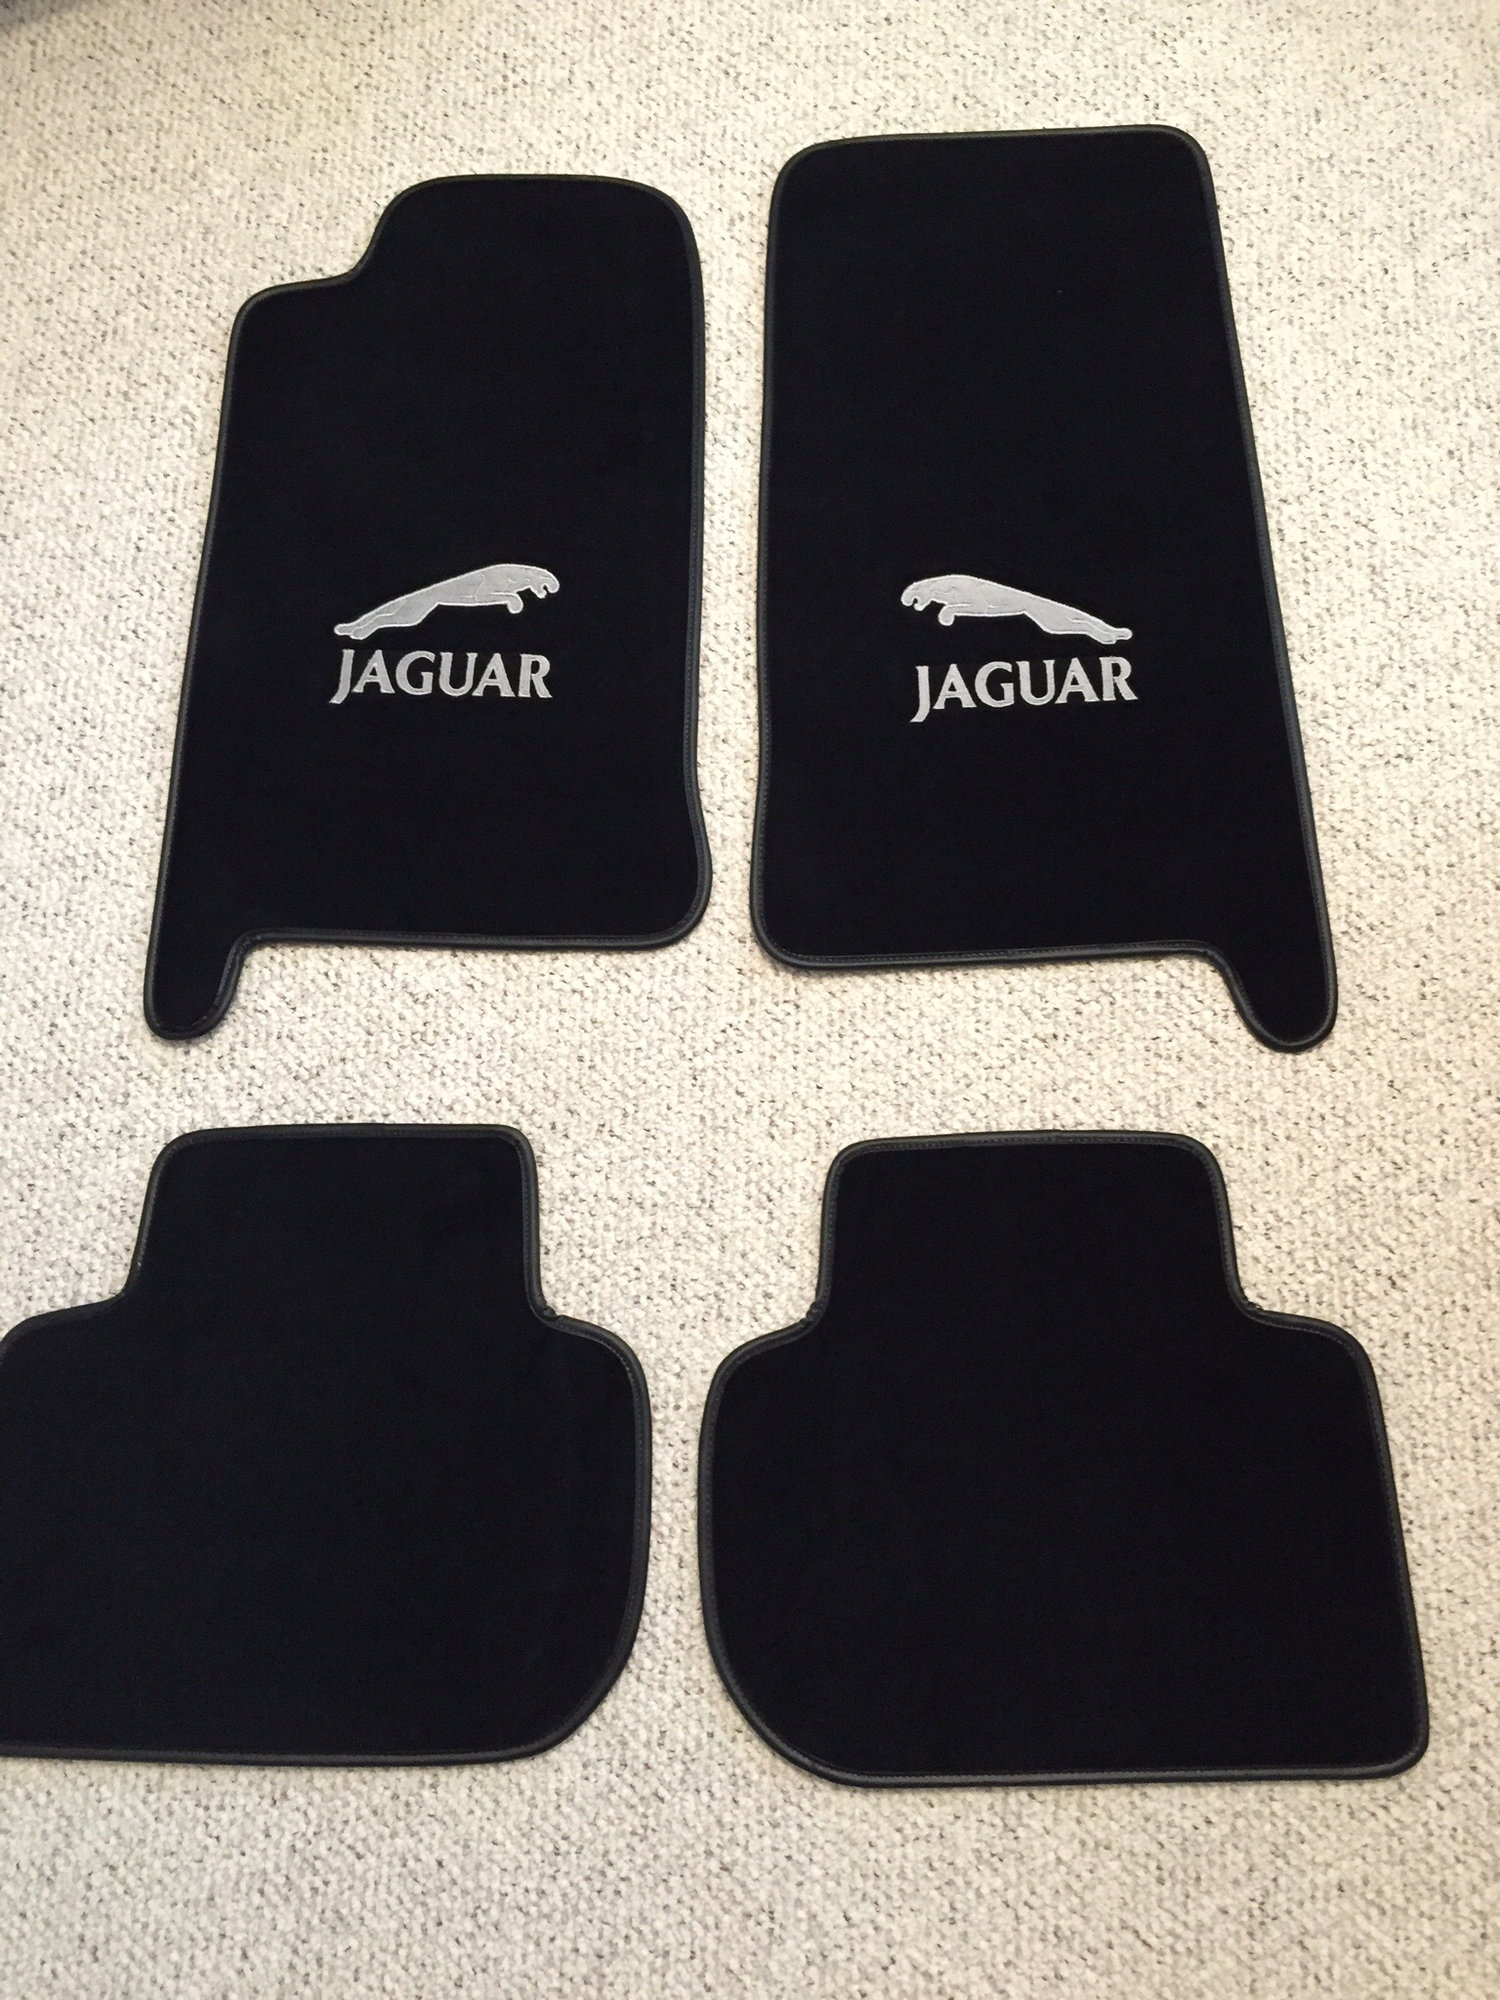 Floor mats with Jaguar logo - Jaguar Forums - Jaguar Enthusiasts Forum Jaguar S Type Floor Mats With Logo